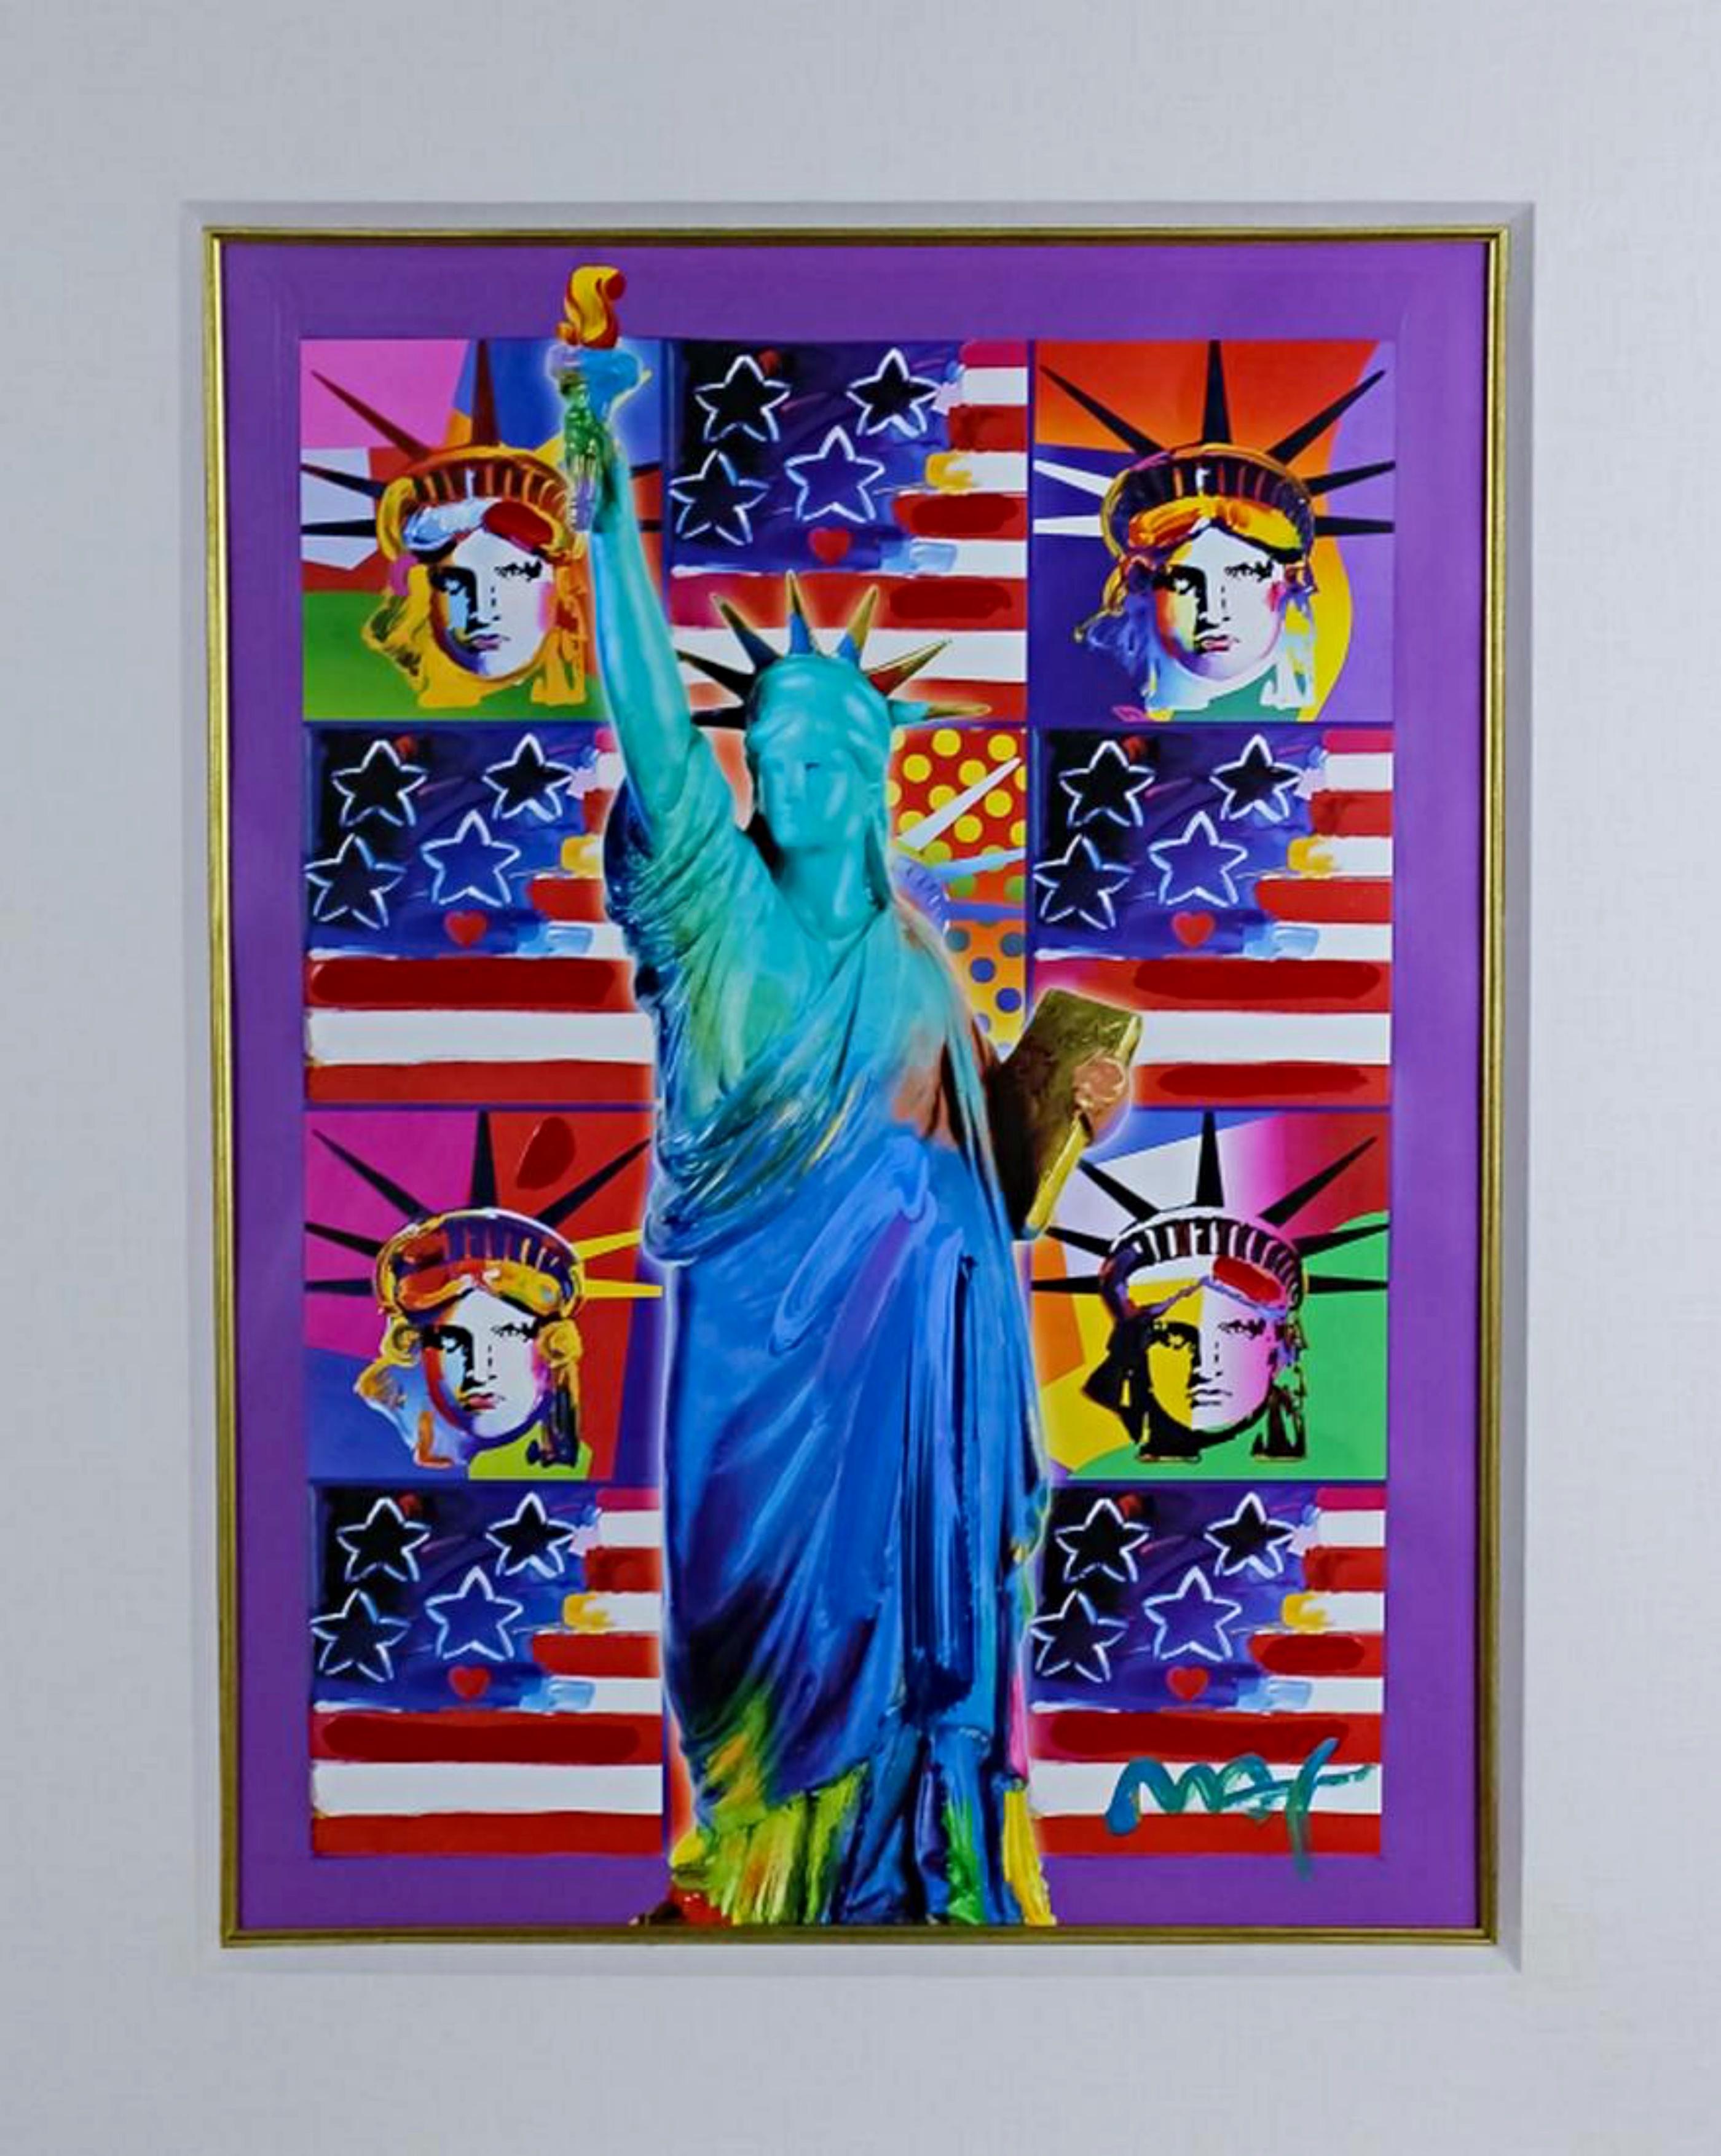 United We Stand: Vier Freiheitsstatuen mit blauem, einzigartigem, signiertem, gerahmtem Gemälde (Pop-Art), Painting, von Peter Max